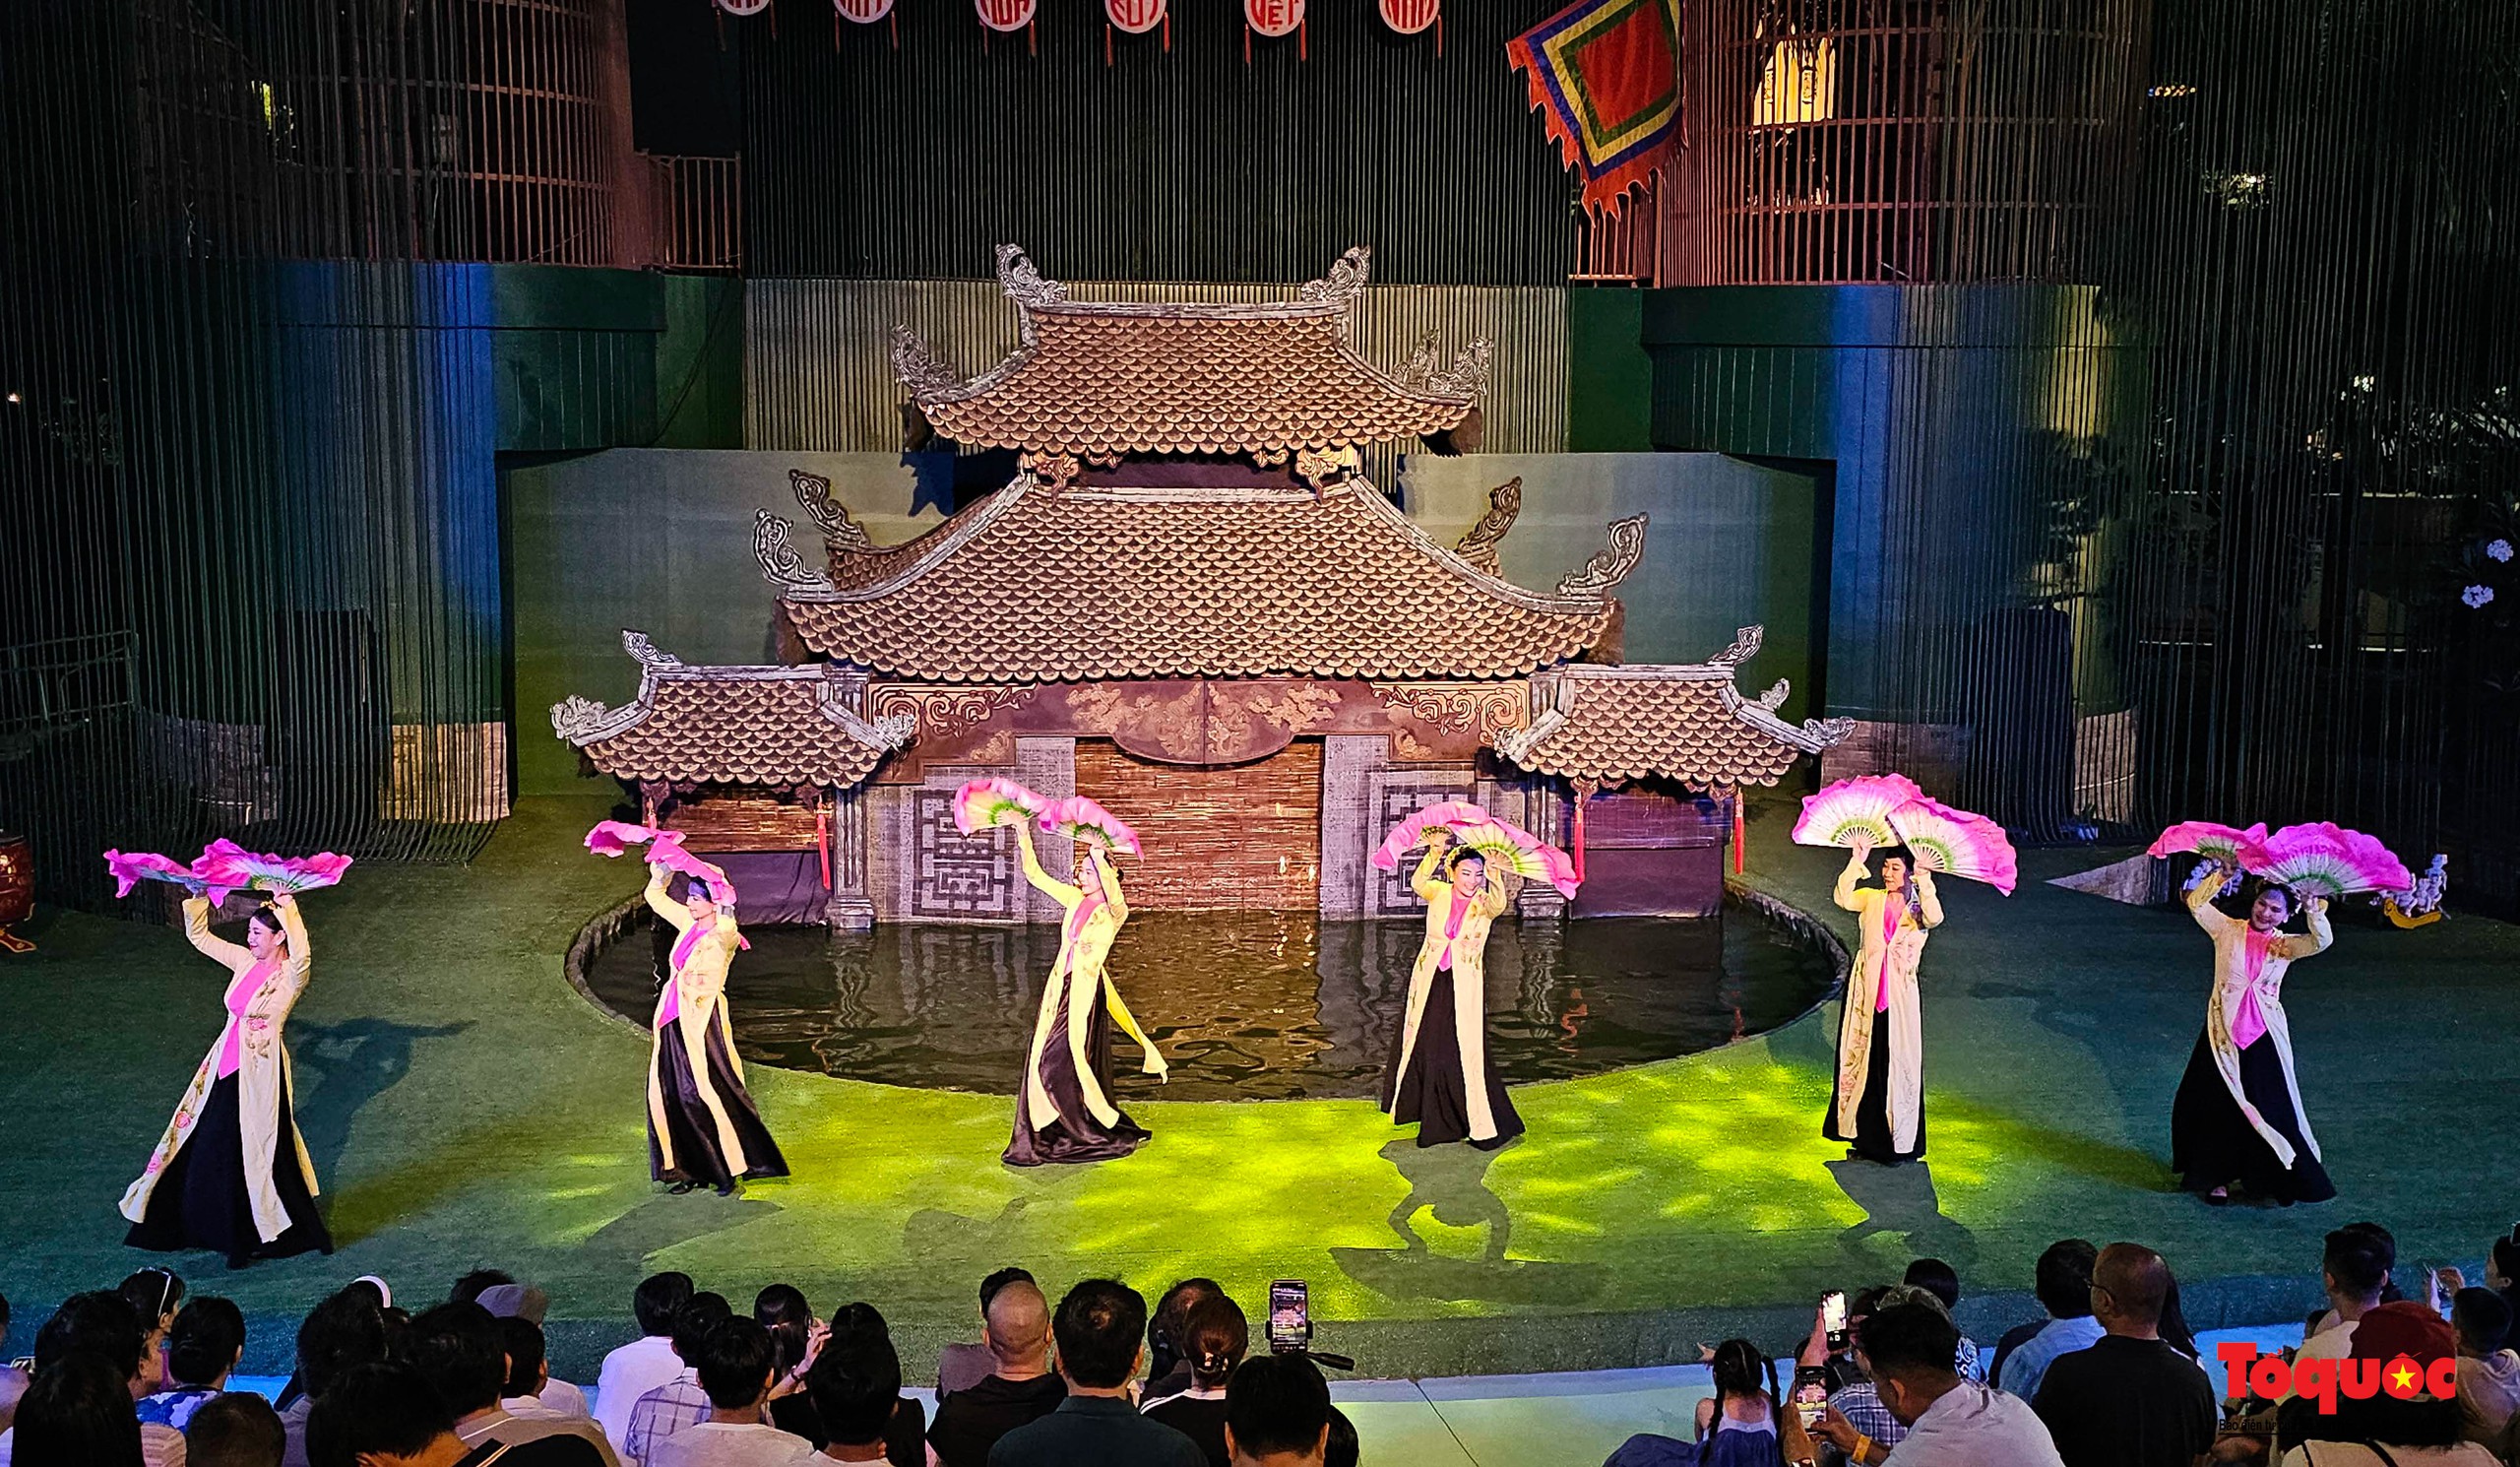 Du khách thích thú khám phá dòng chảy văn hóa Việt tại nhà hát múa rối lớn nhất miền Trung - Ảnh 13.